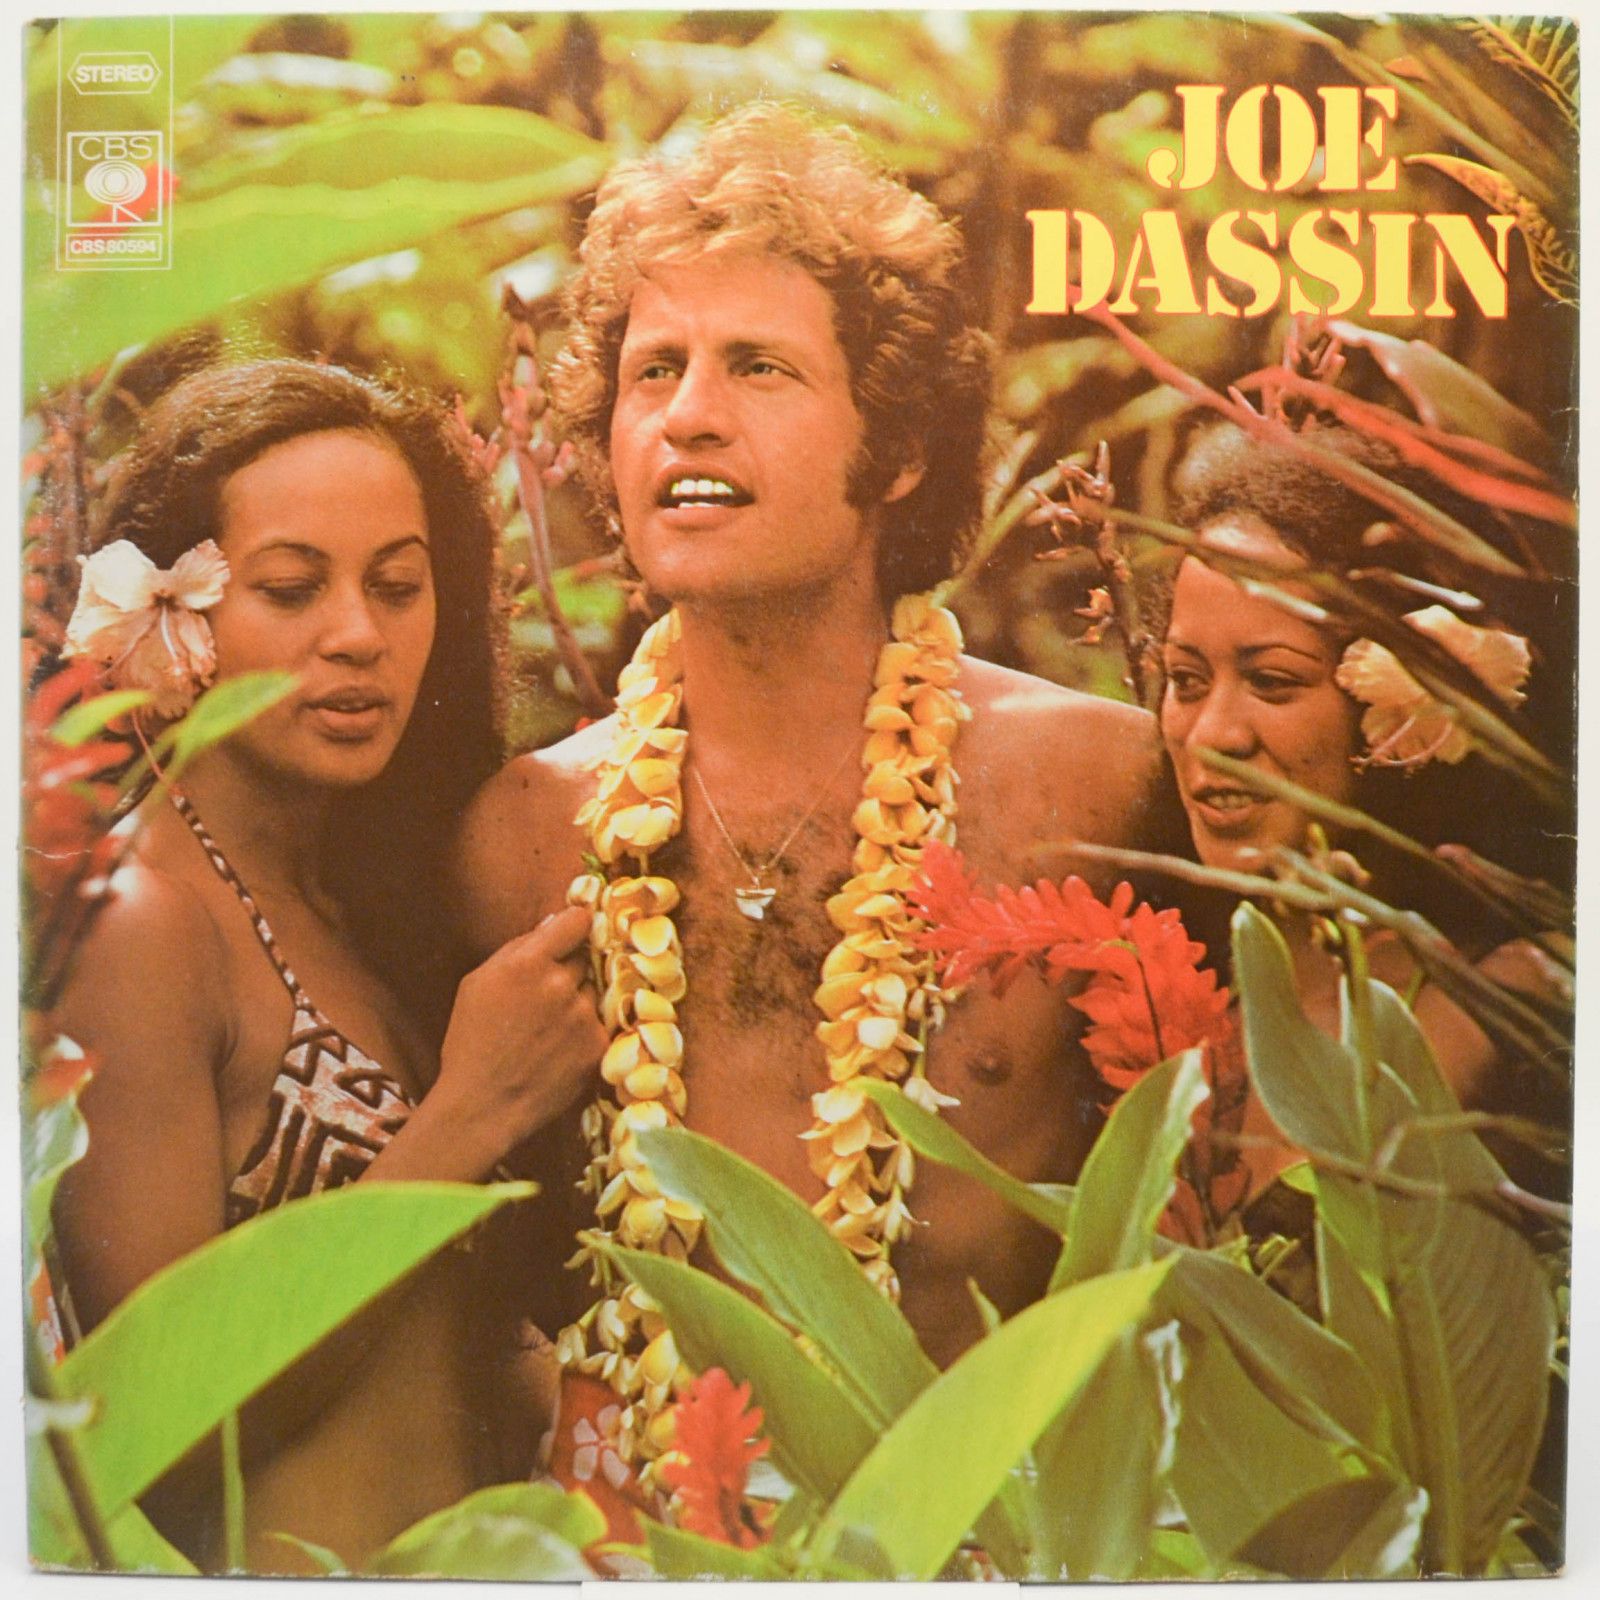 Joe Dassin — Joe Dassin (1-st, France), 1974